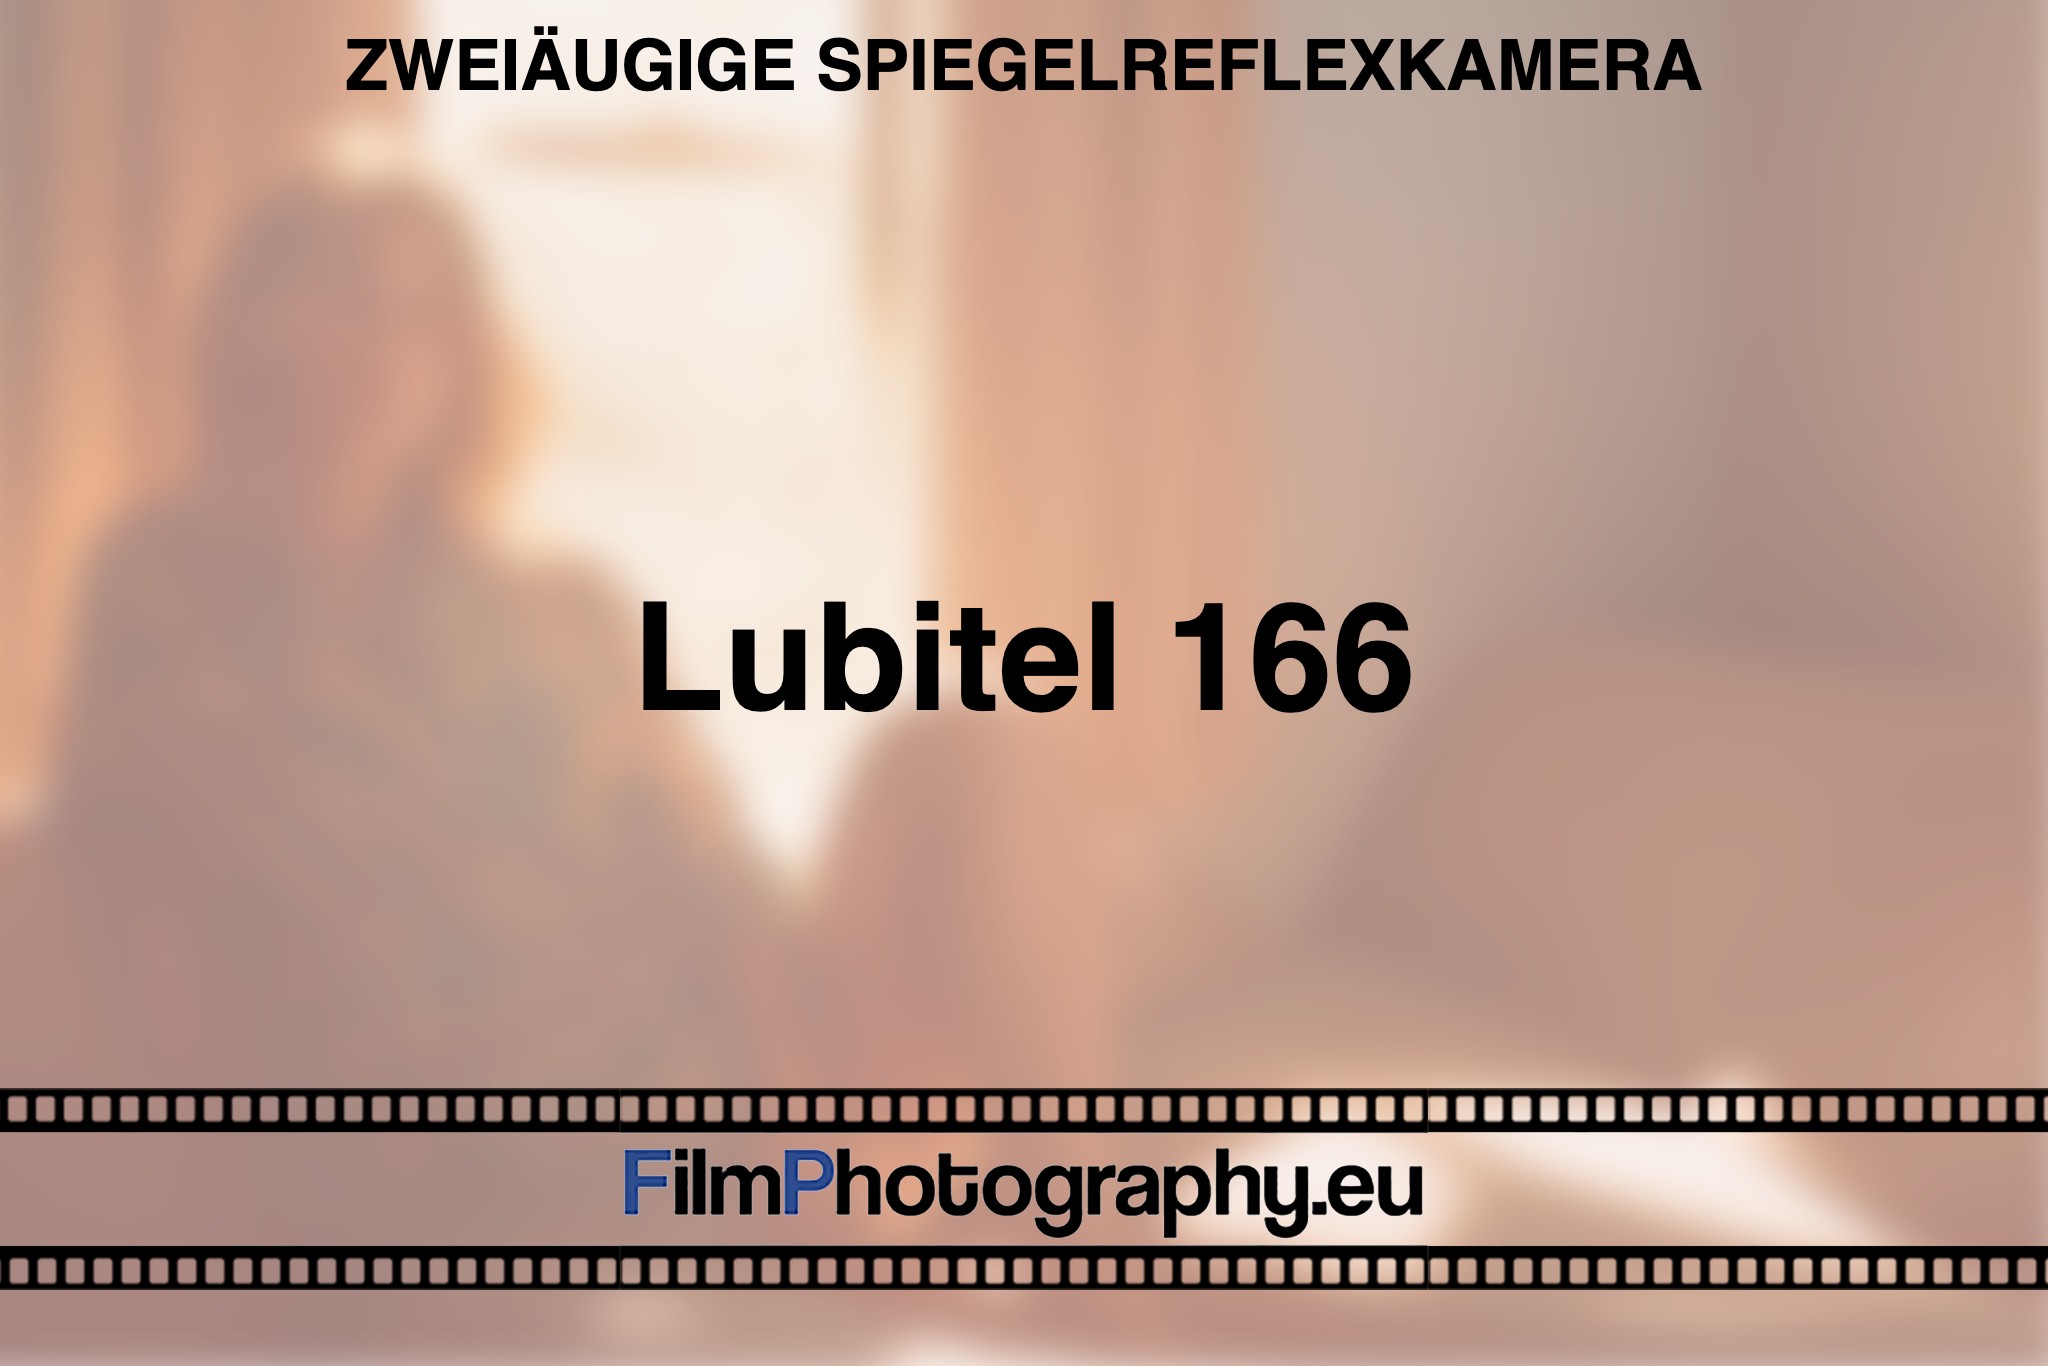 lubitel-166-zweiaeugige-spiegelreflexkamera-bnv